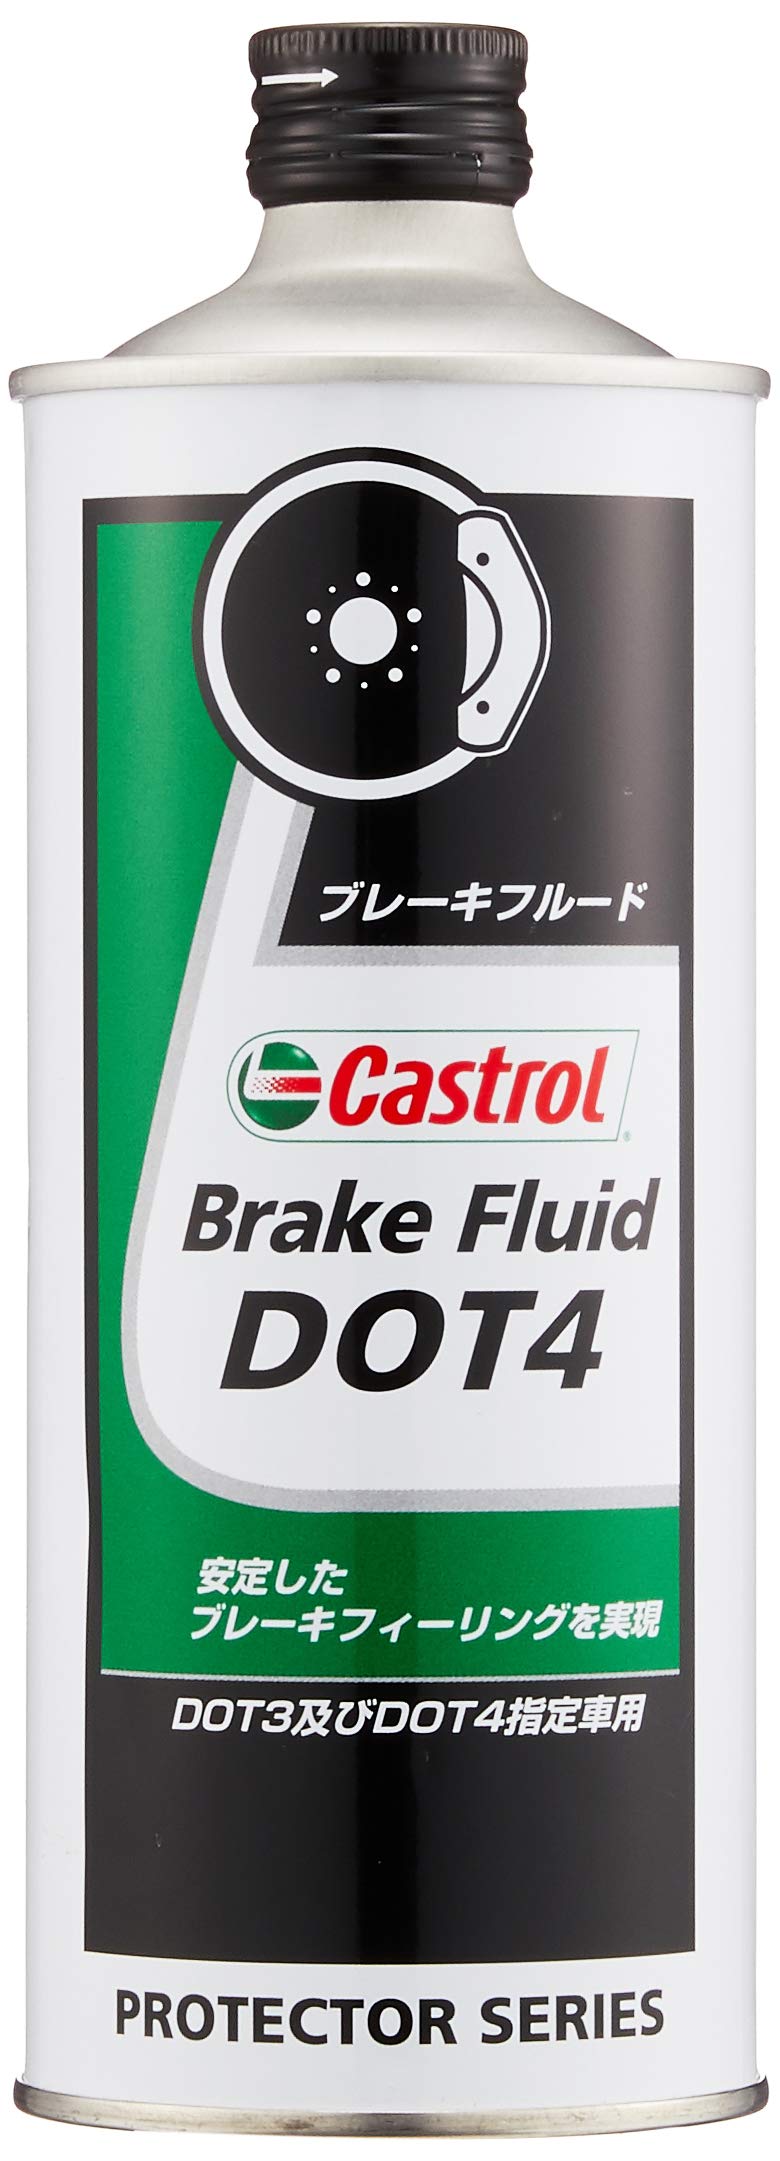 カストロール(Castrol) ブレーキフルード Brake Fluid DOT4 500ml Castrol